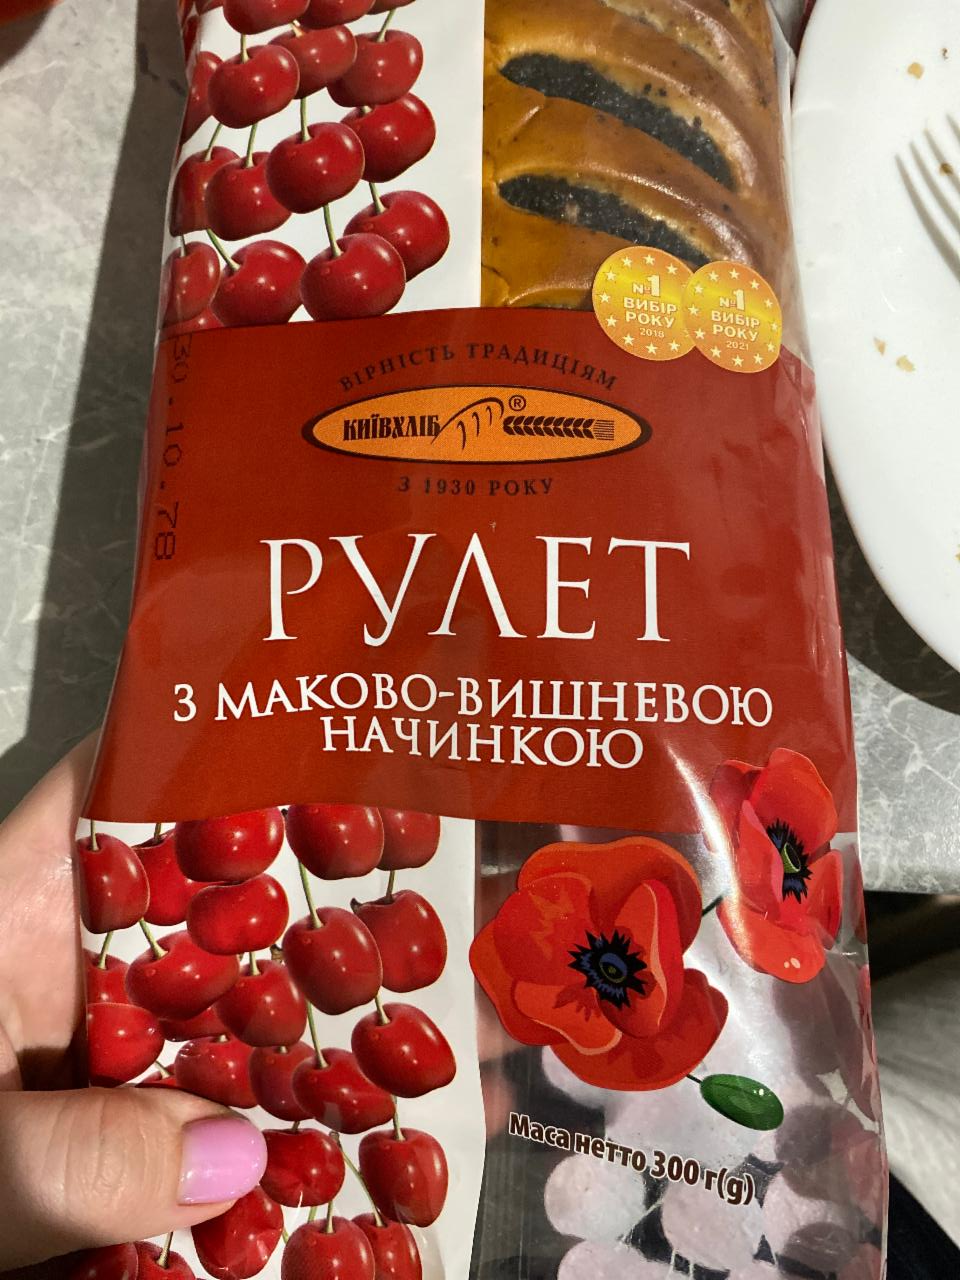 Фото - Рулет з маково-вишневою начинкою Київхліб